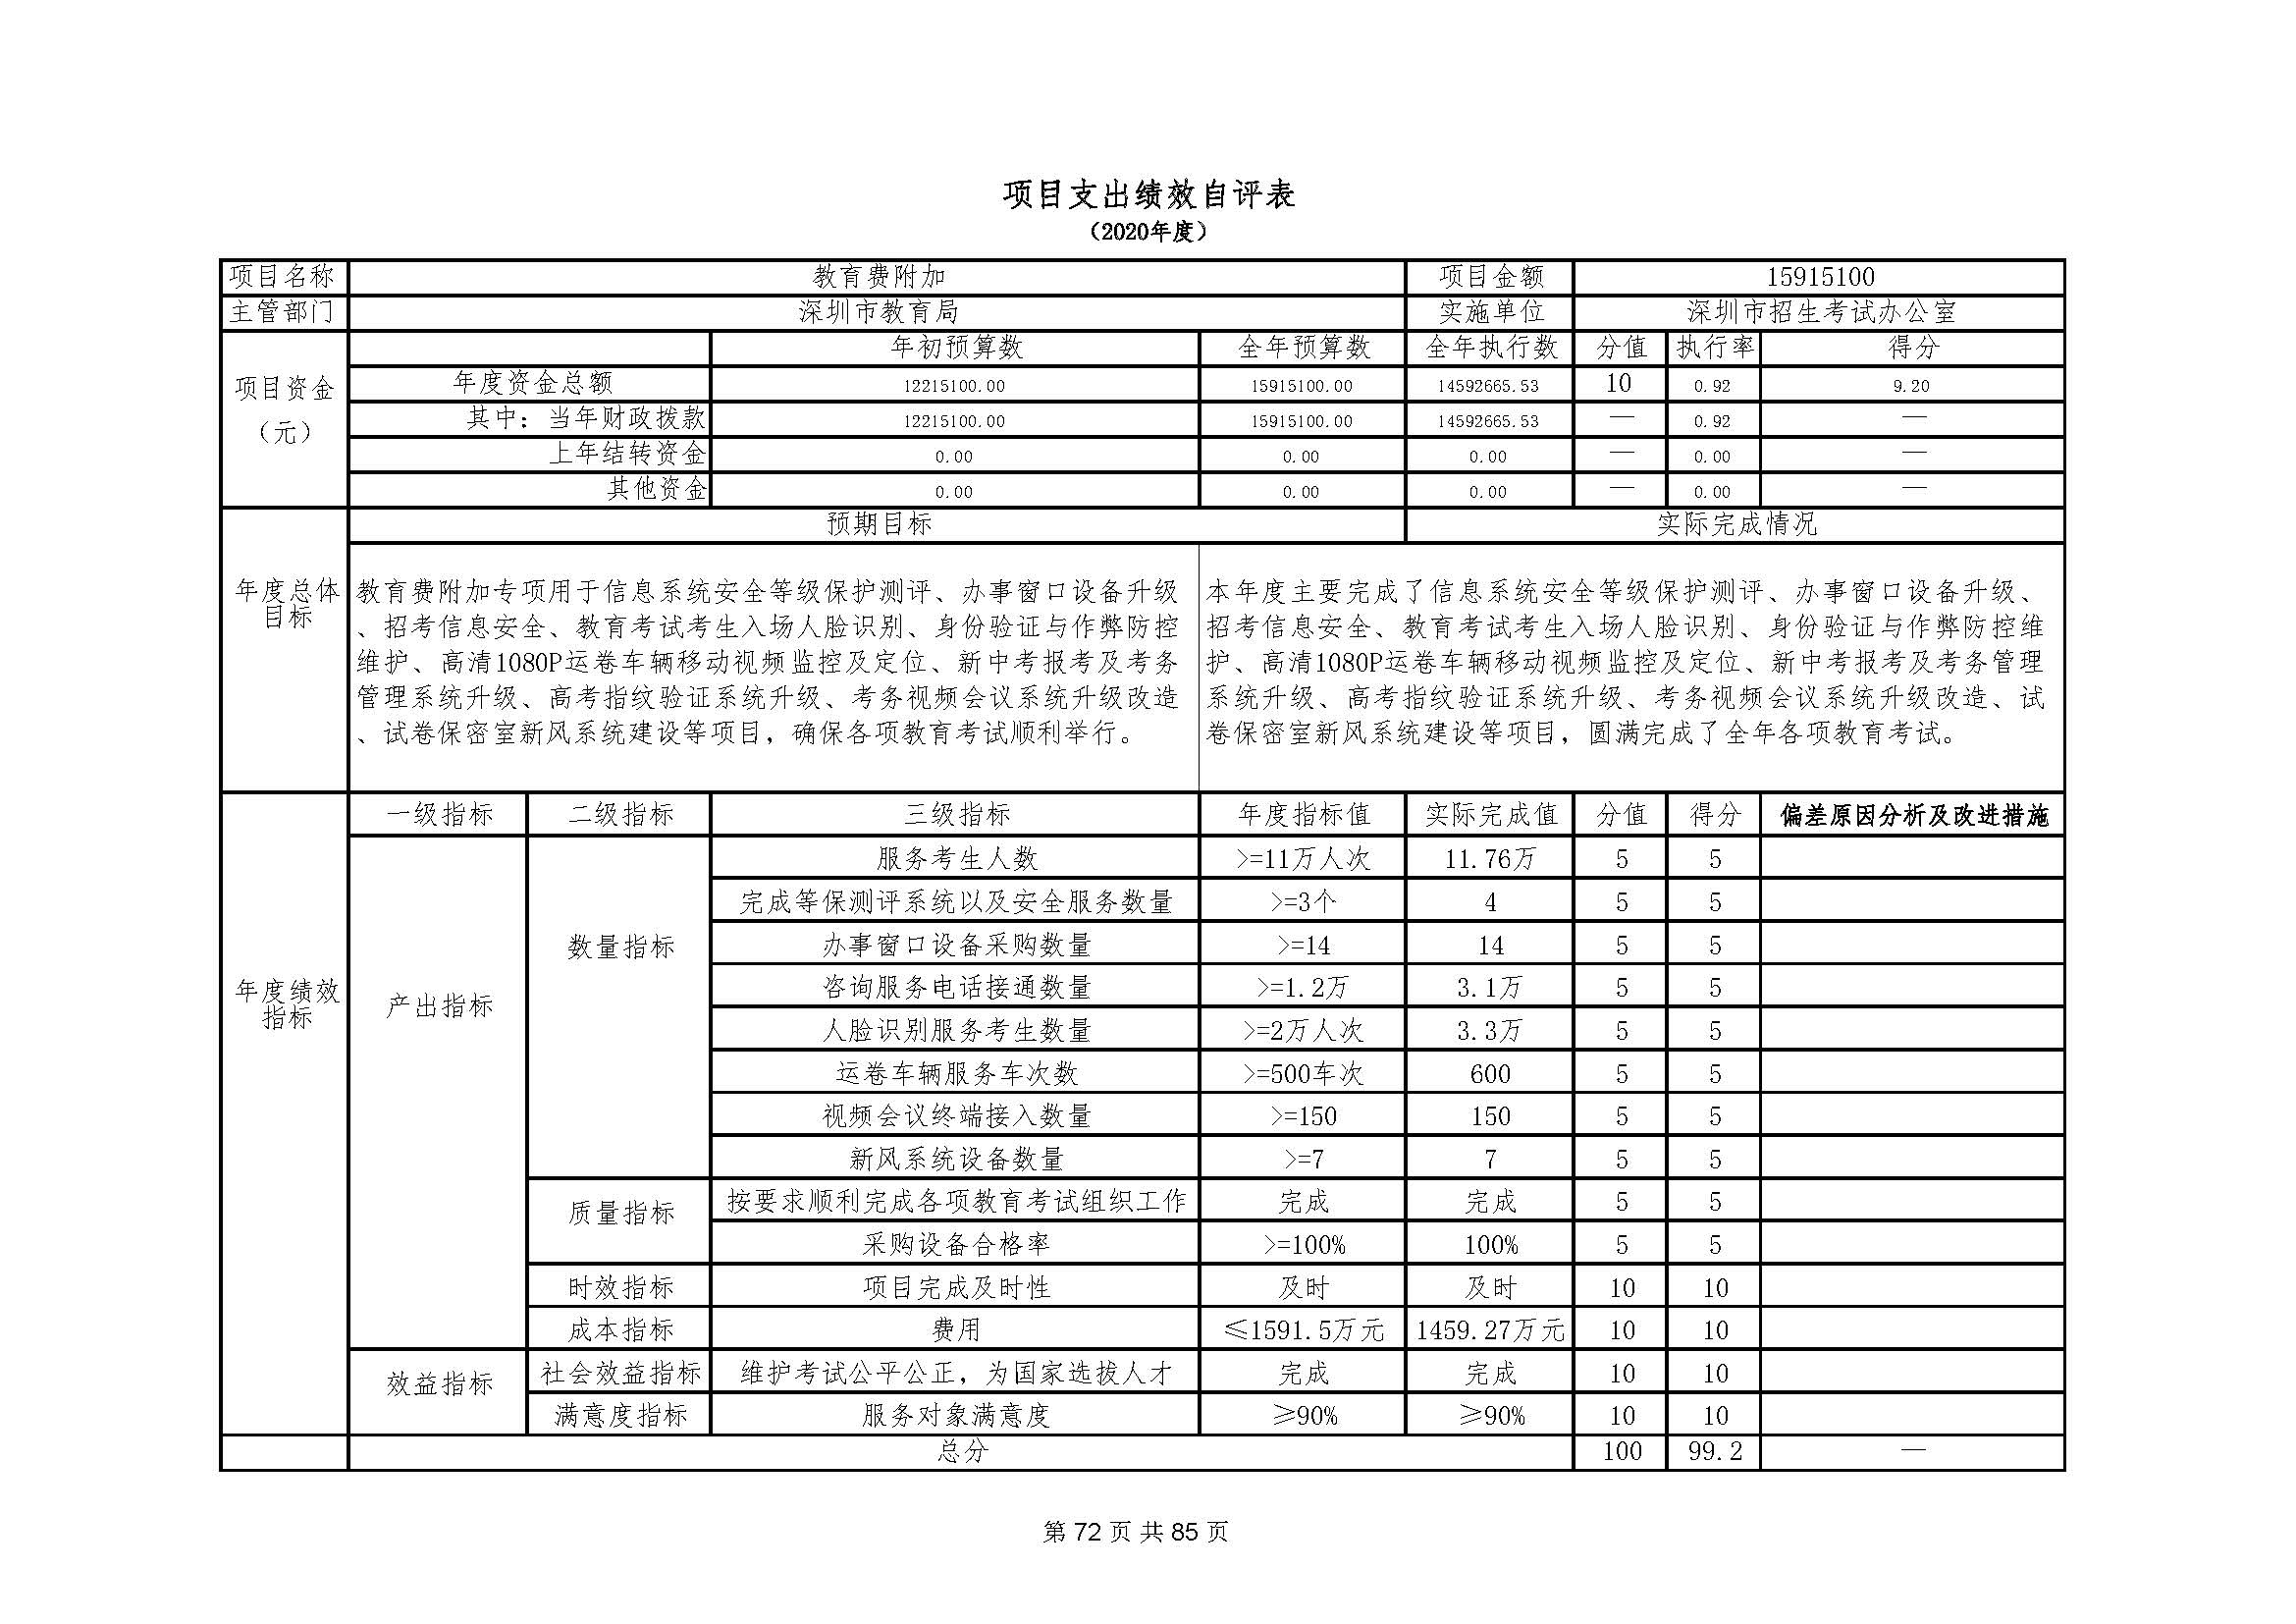 深圳市招生考试办公室2020年度部门决算_页面_73.jpg